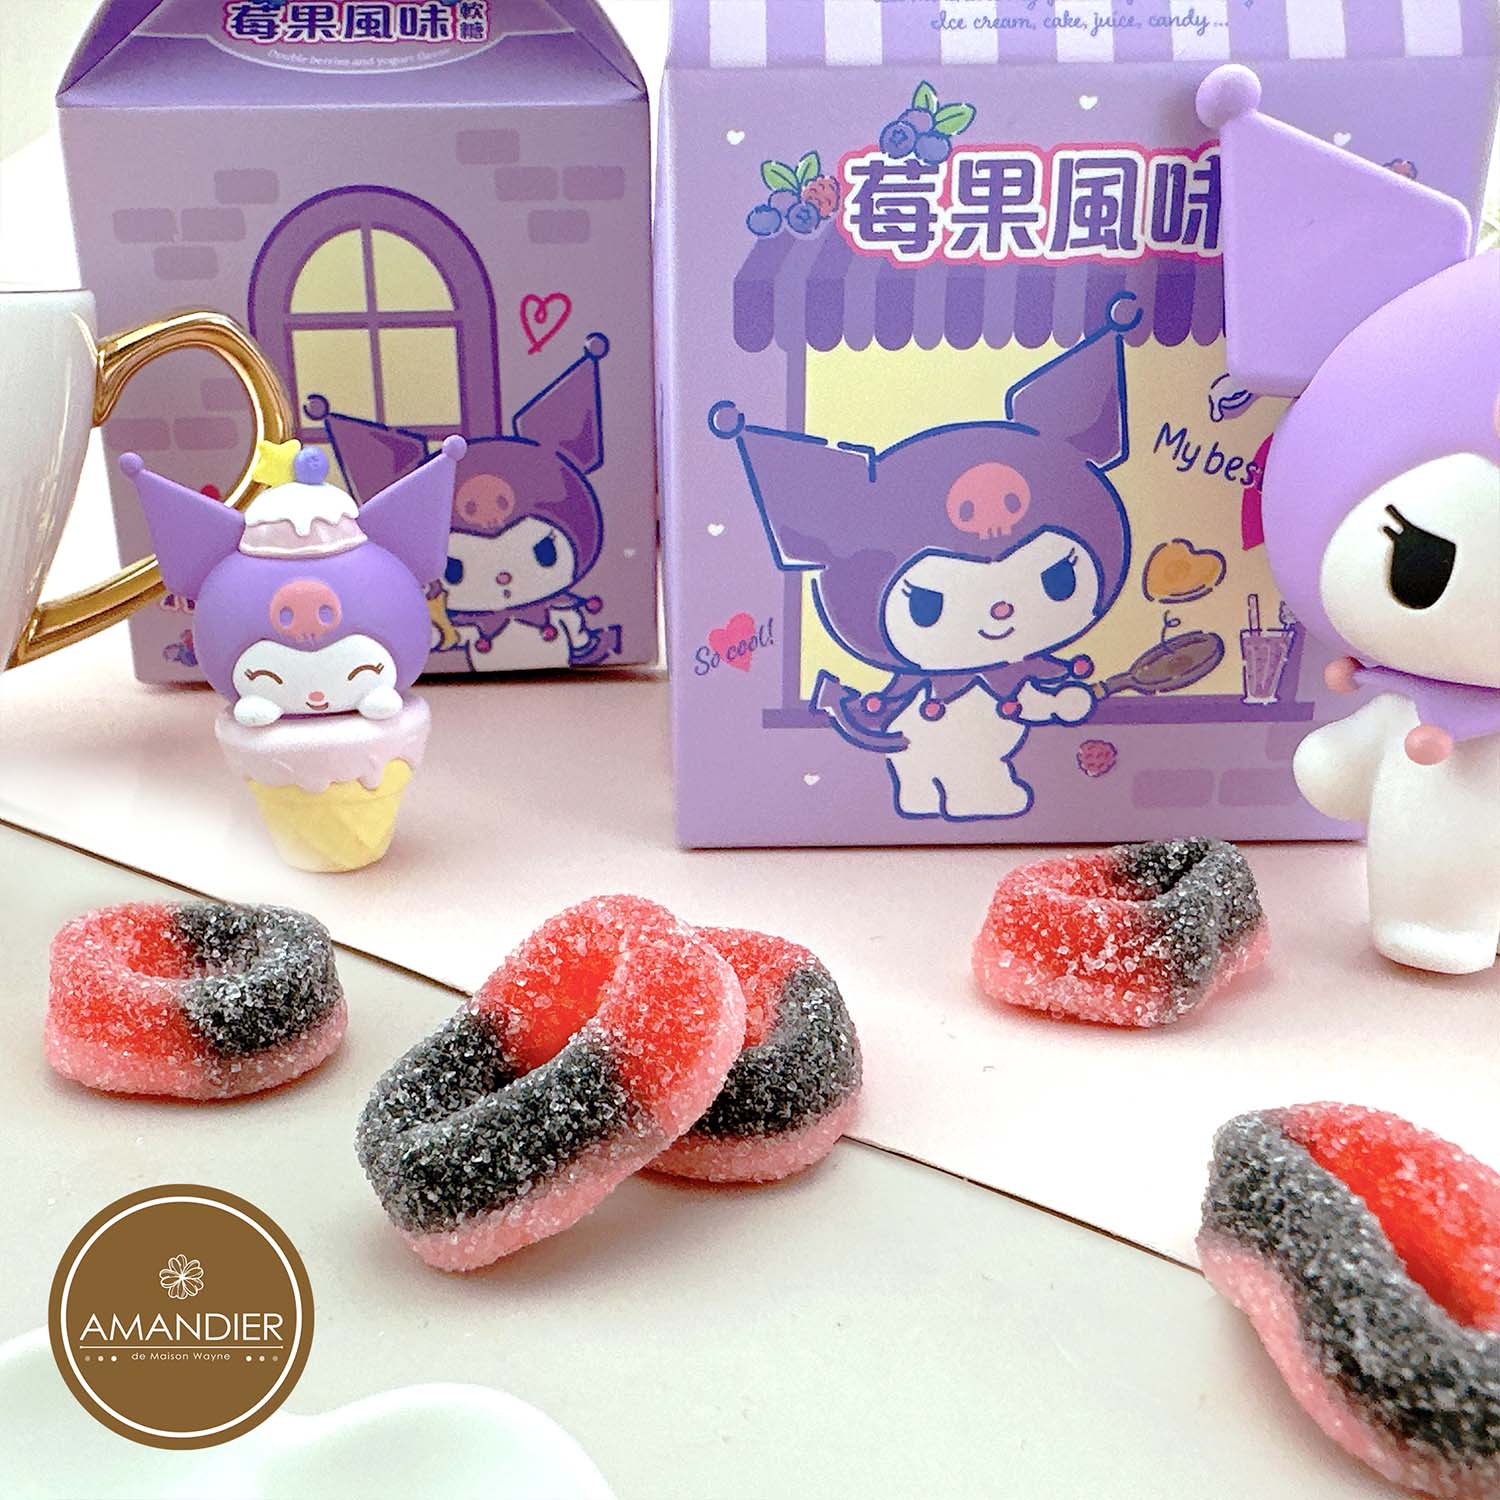 【雅蒙蒂】酷洛米Kuromi莓果風味軟糖